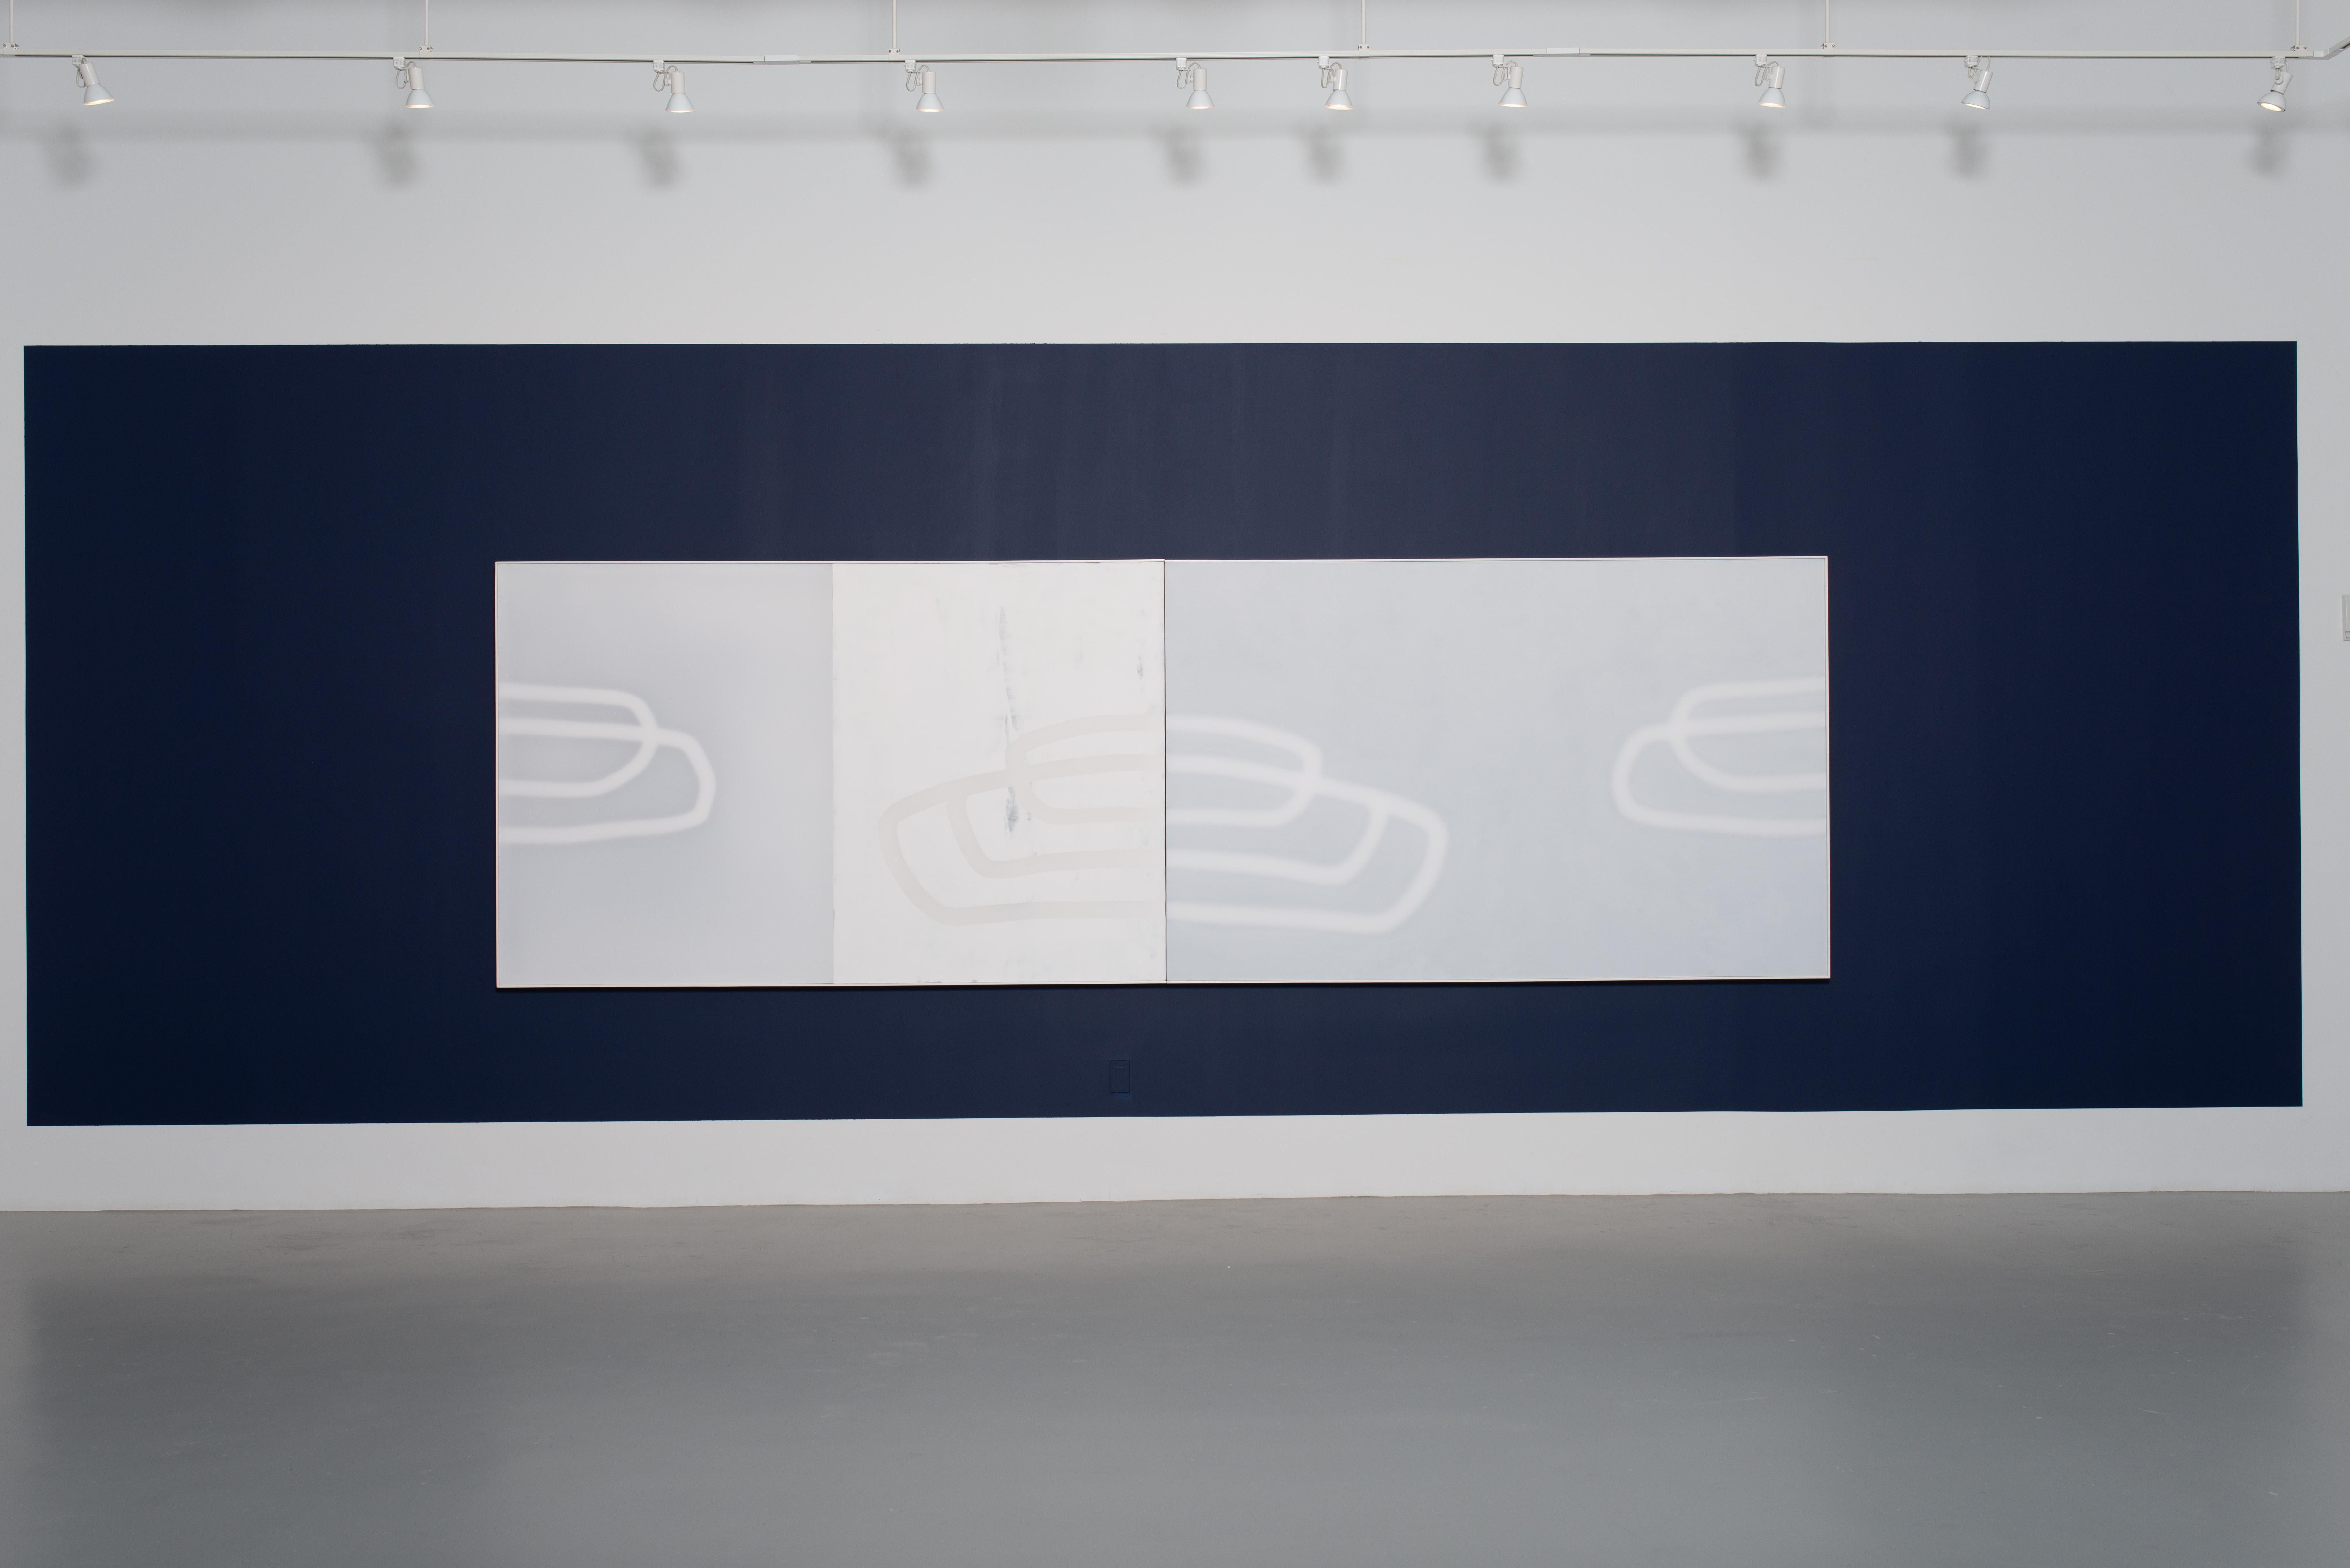 Mais il y a le jour et la nuit 1, 2019
Technique mixte sur toile
61 x 192 pouces
155 x 488 cm

Udo Nöger crée des peintures monochromes lumineuses qui capturent la lumière, le mouvement et l'énergie exprimés dans des compositions très minimalistes.